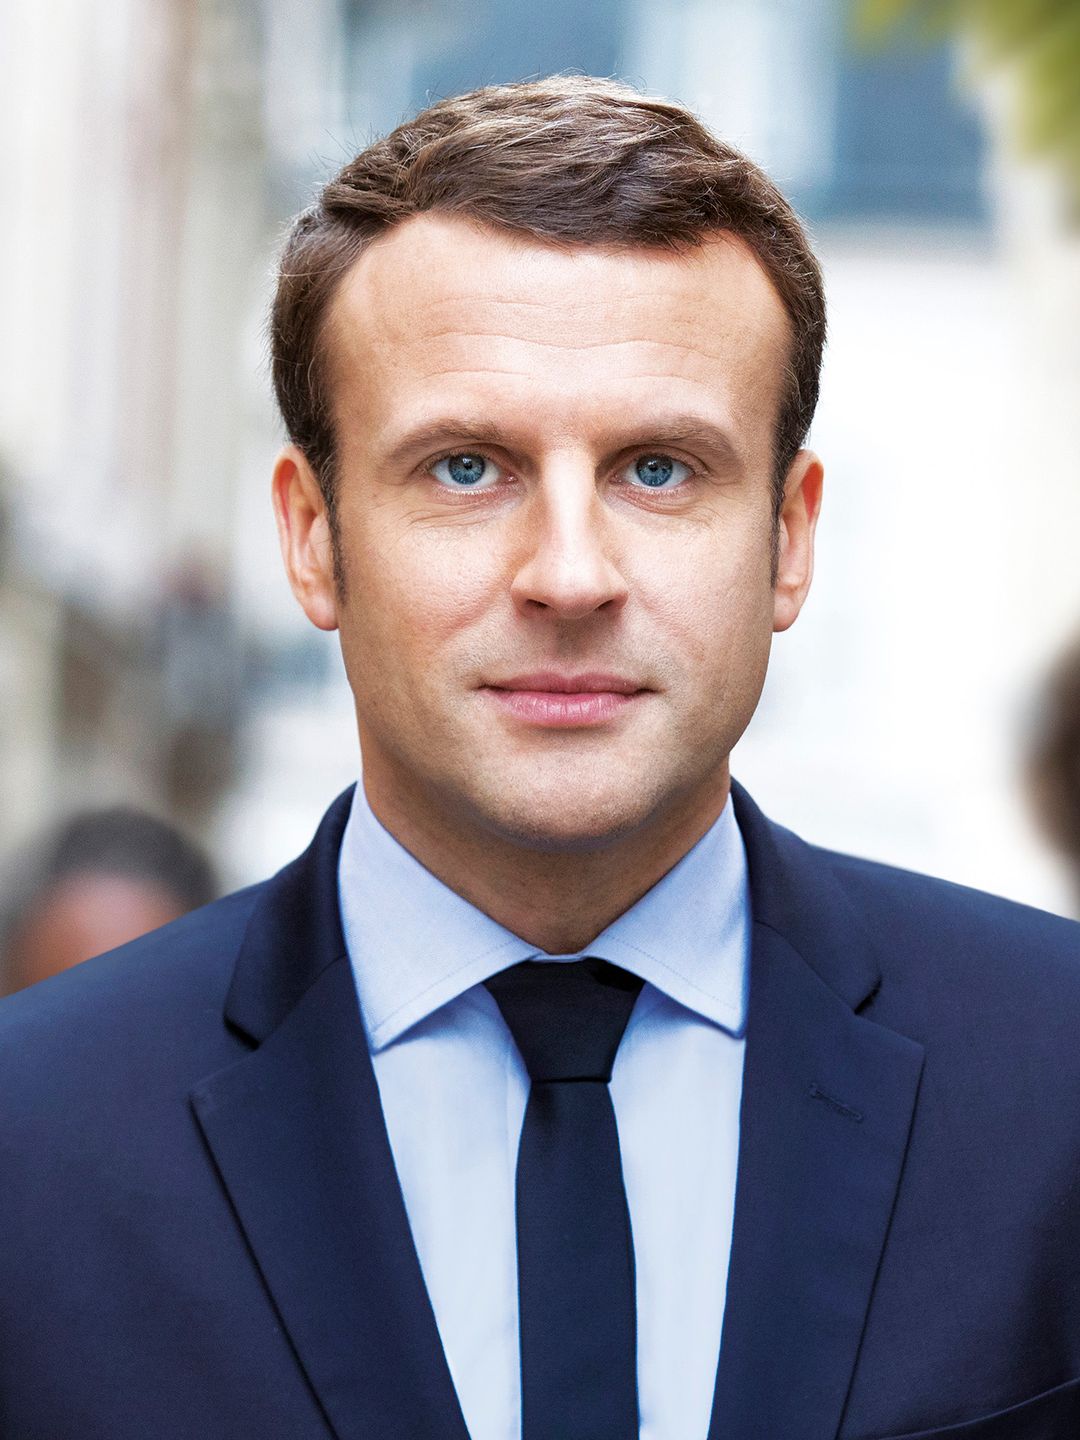 Emmanuel Macron age